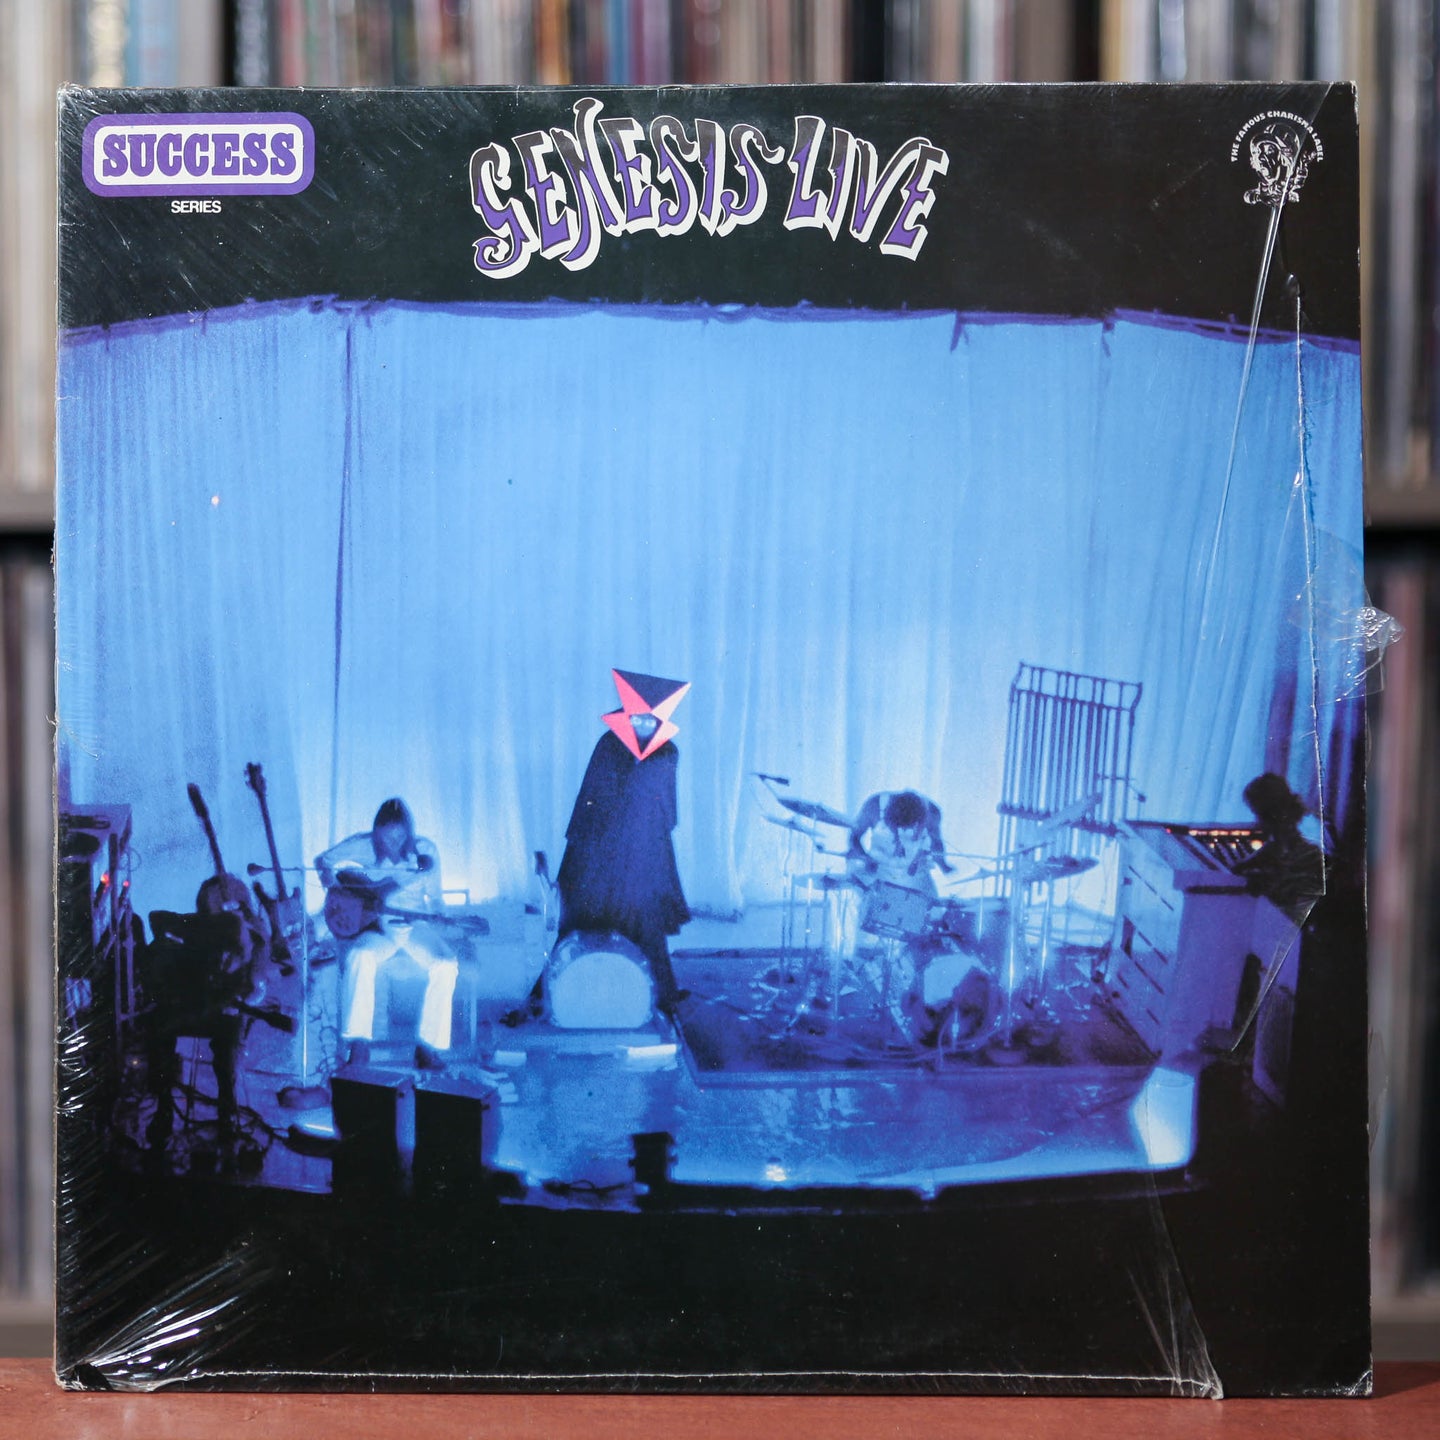 Genesis  - Live - Dutch Import - 1973 Charisma, VG+/VG+ w/Shrink